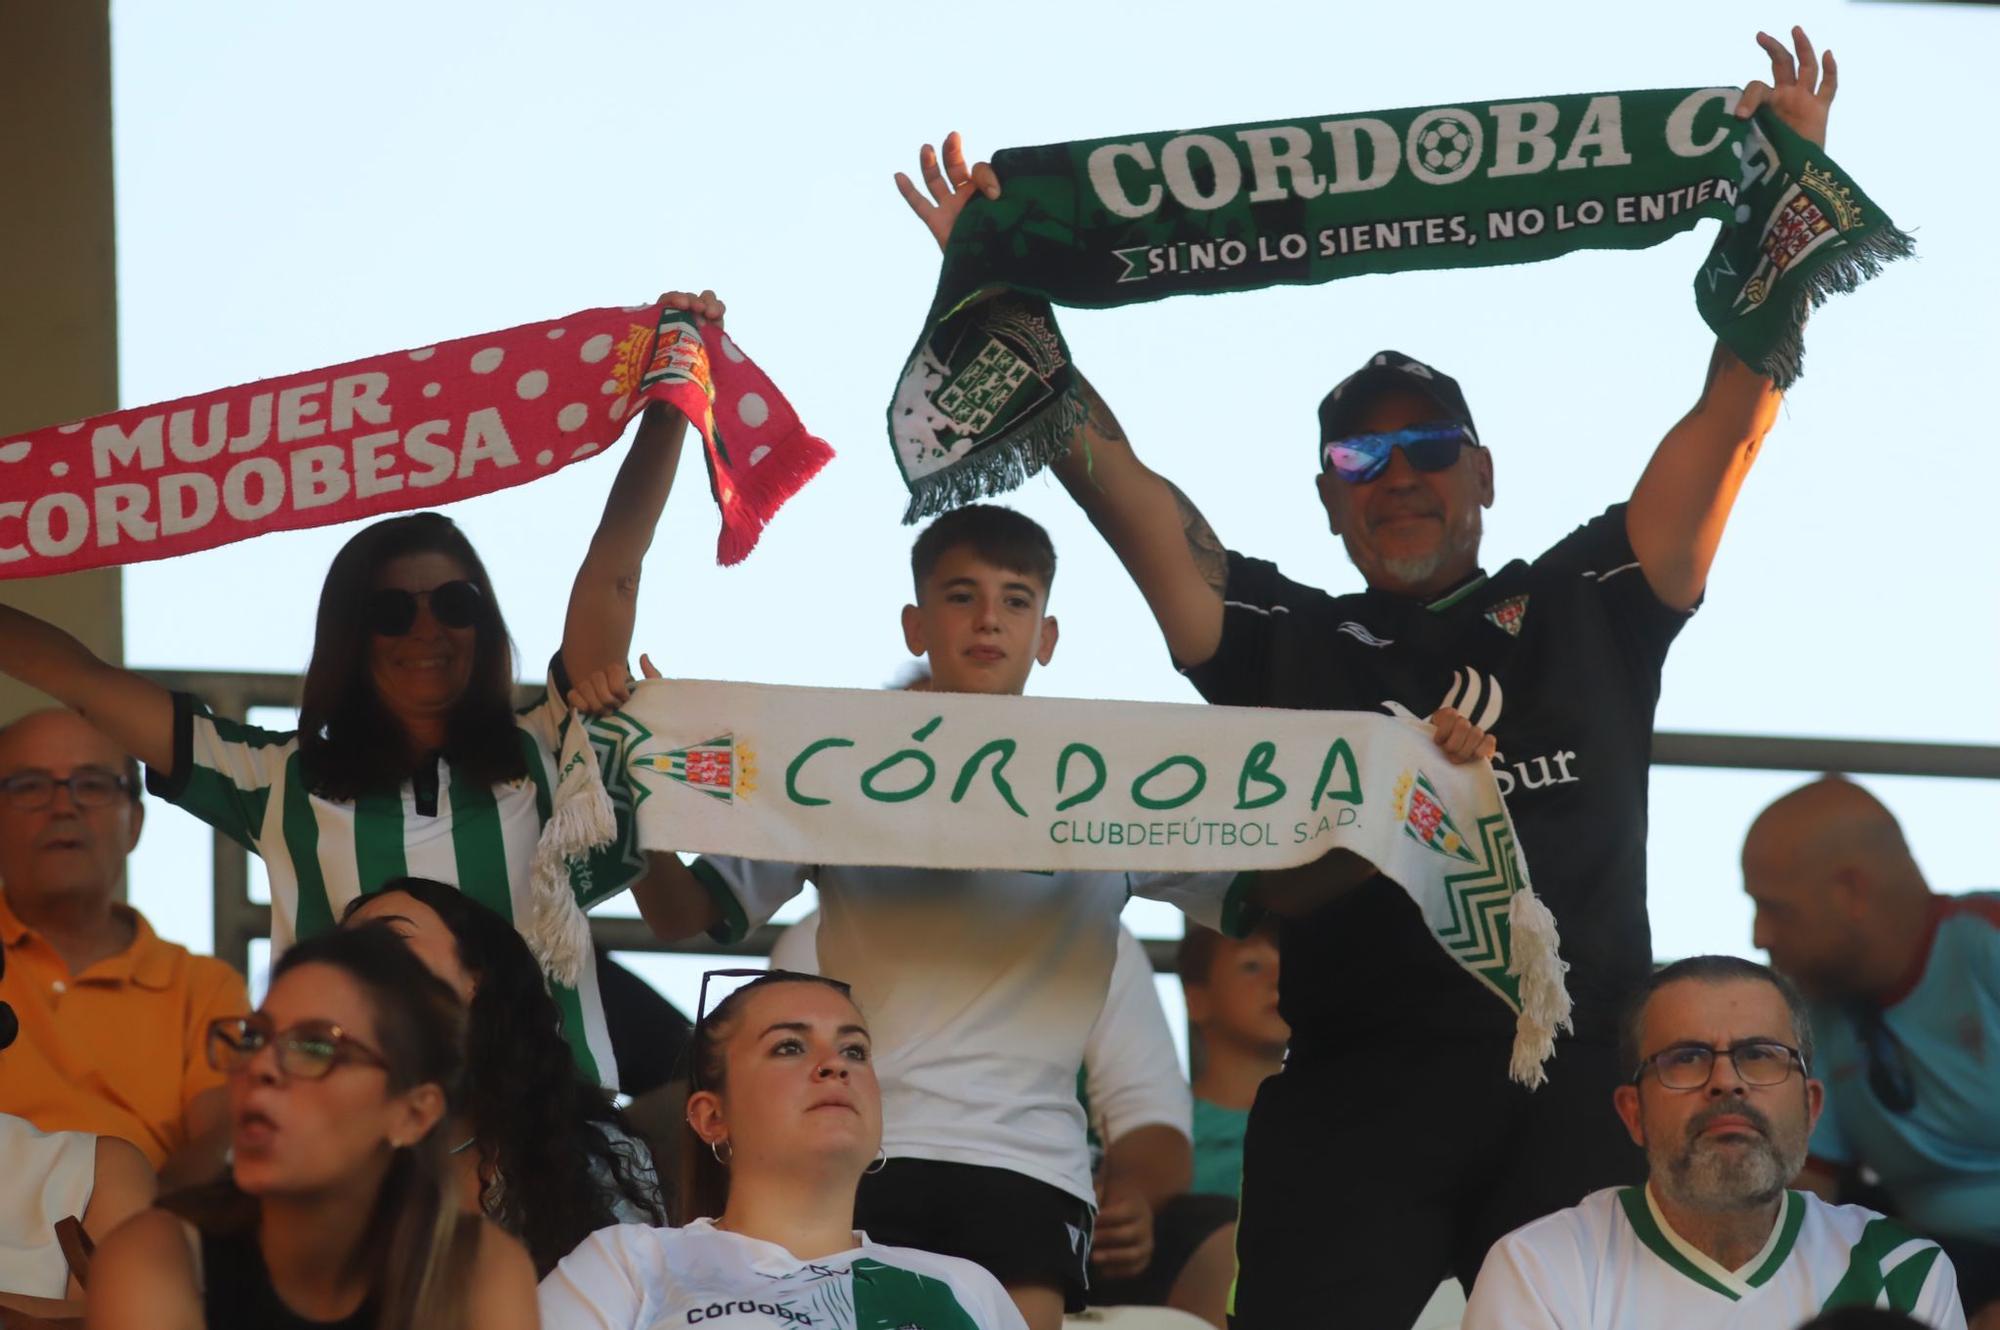 Córdoba CF - Recreativo Granada : las imágenes de la afición en El Arcángel